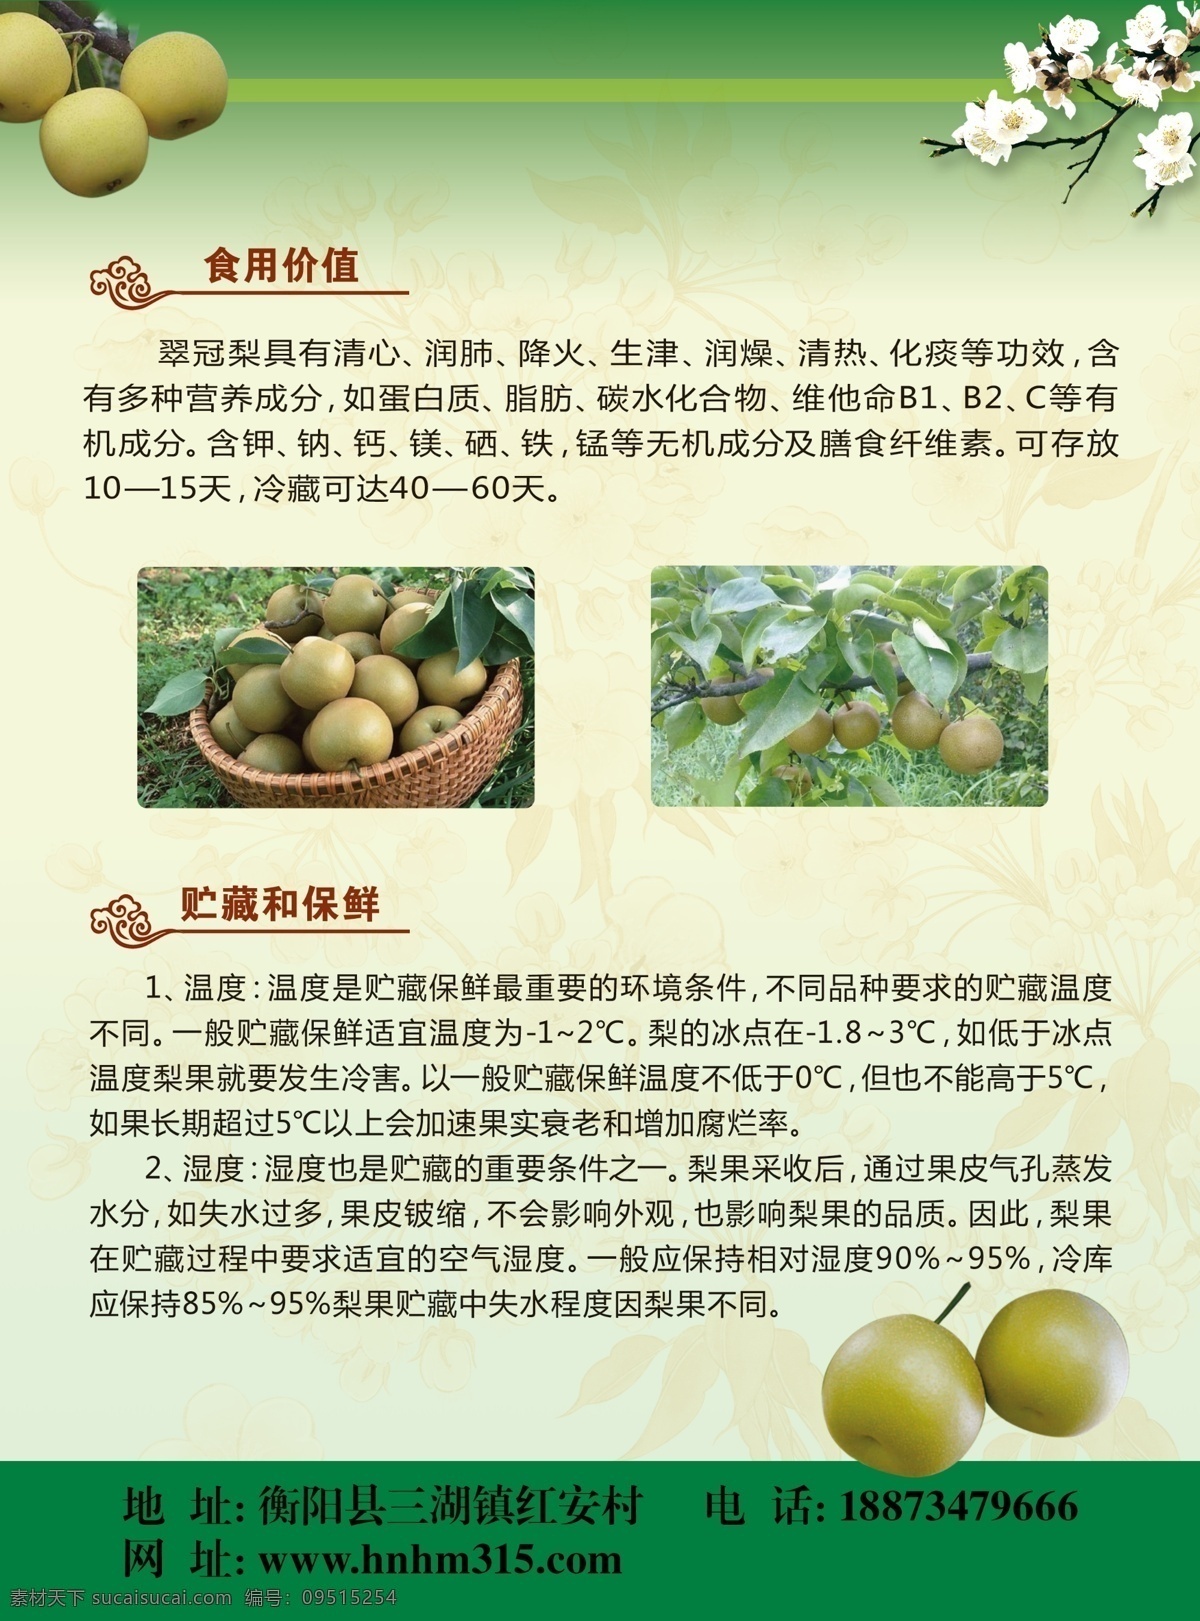 翠冠梨 梨树 食用价值 广告设计模板 源文件